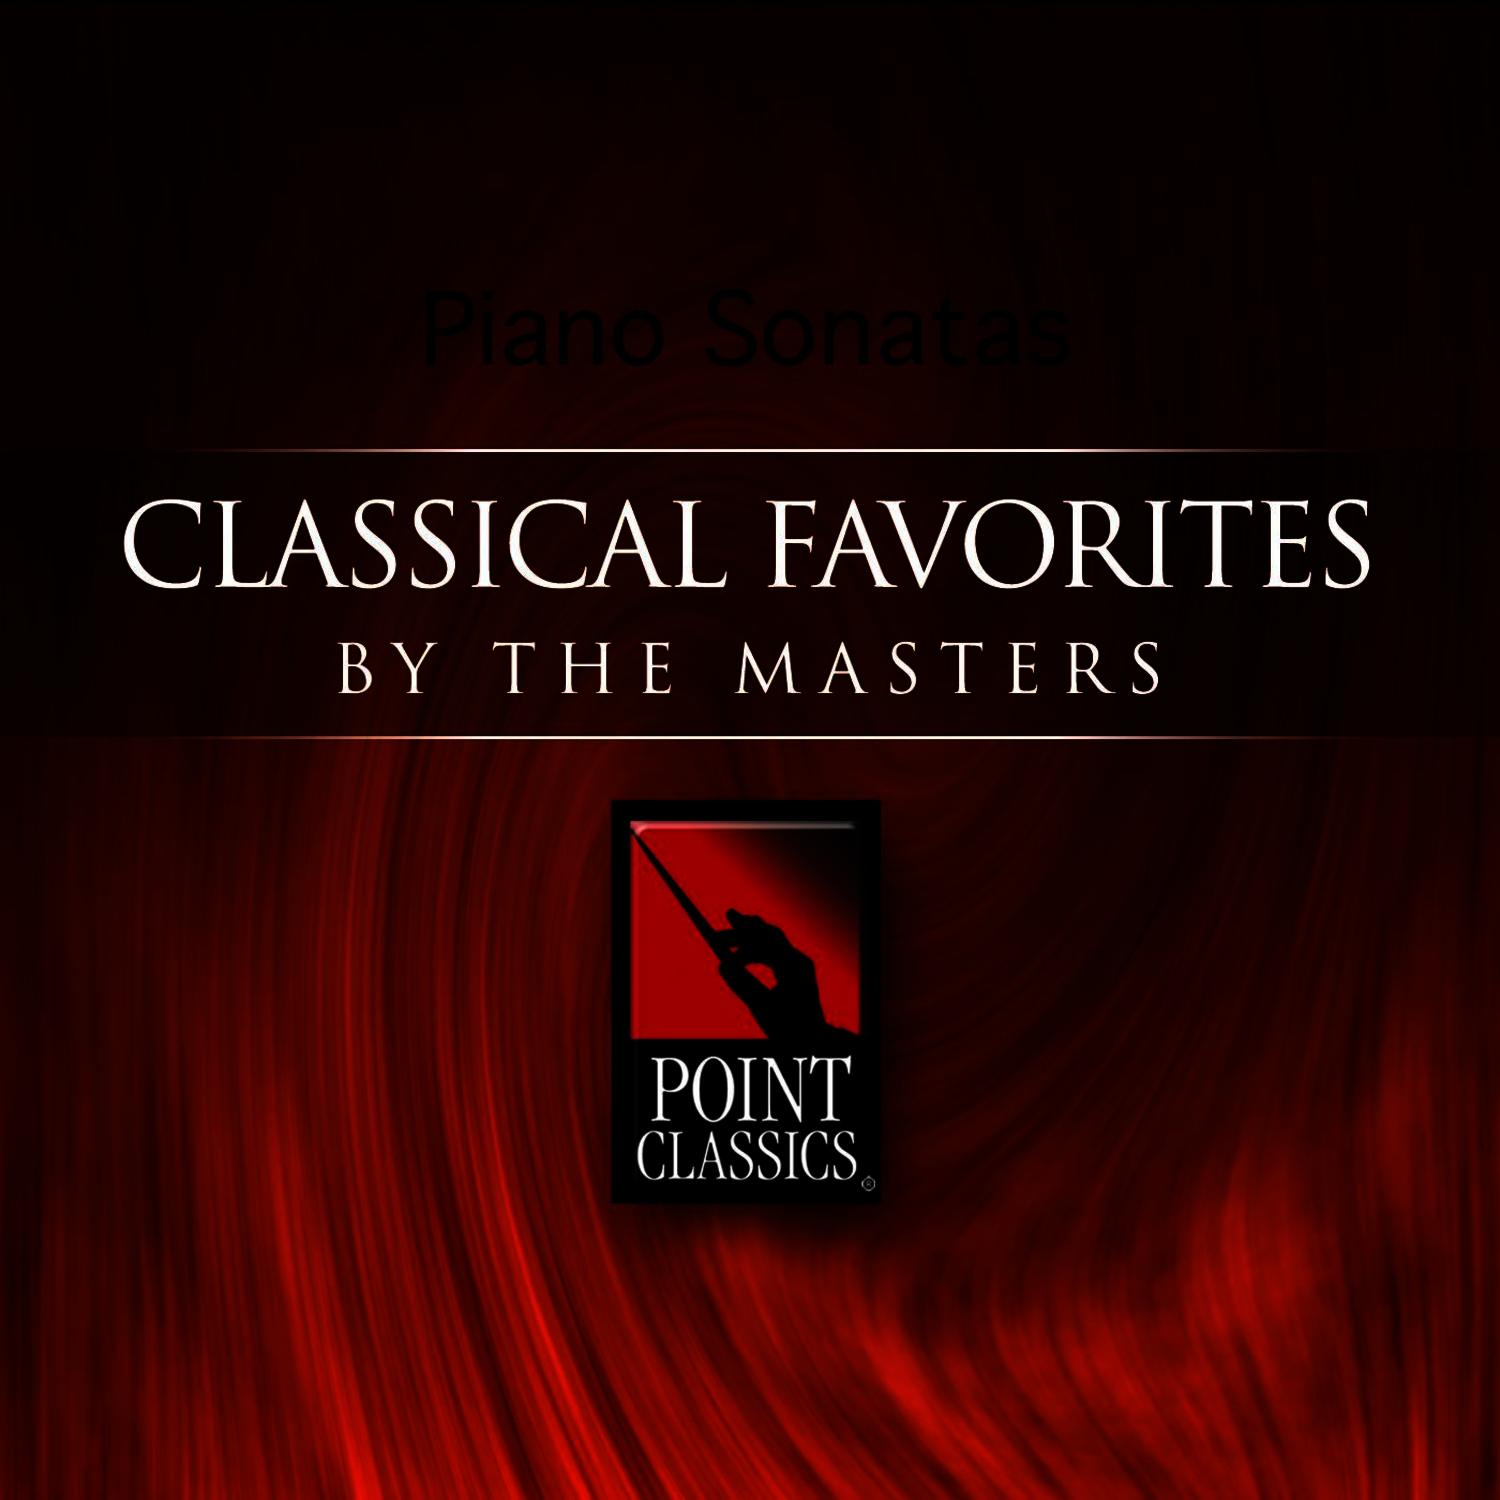 Sonata in B flat Major, L. 396